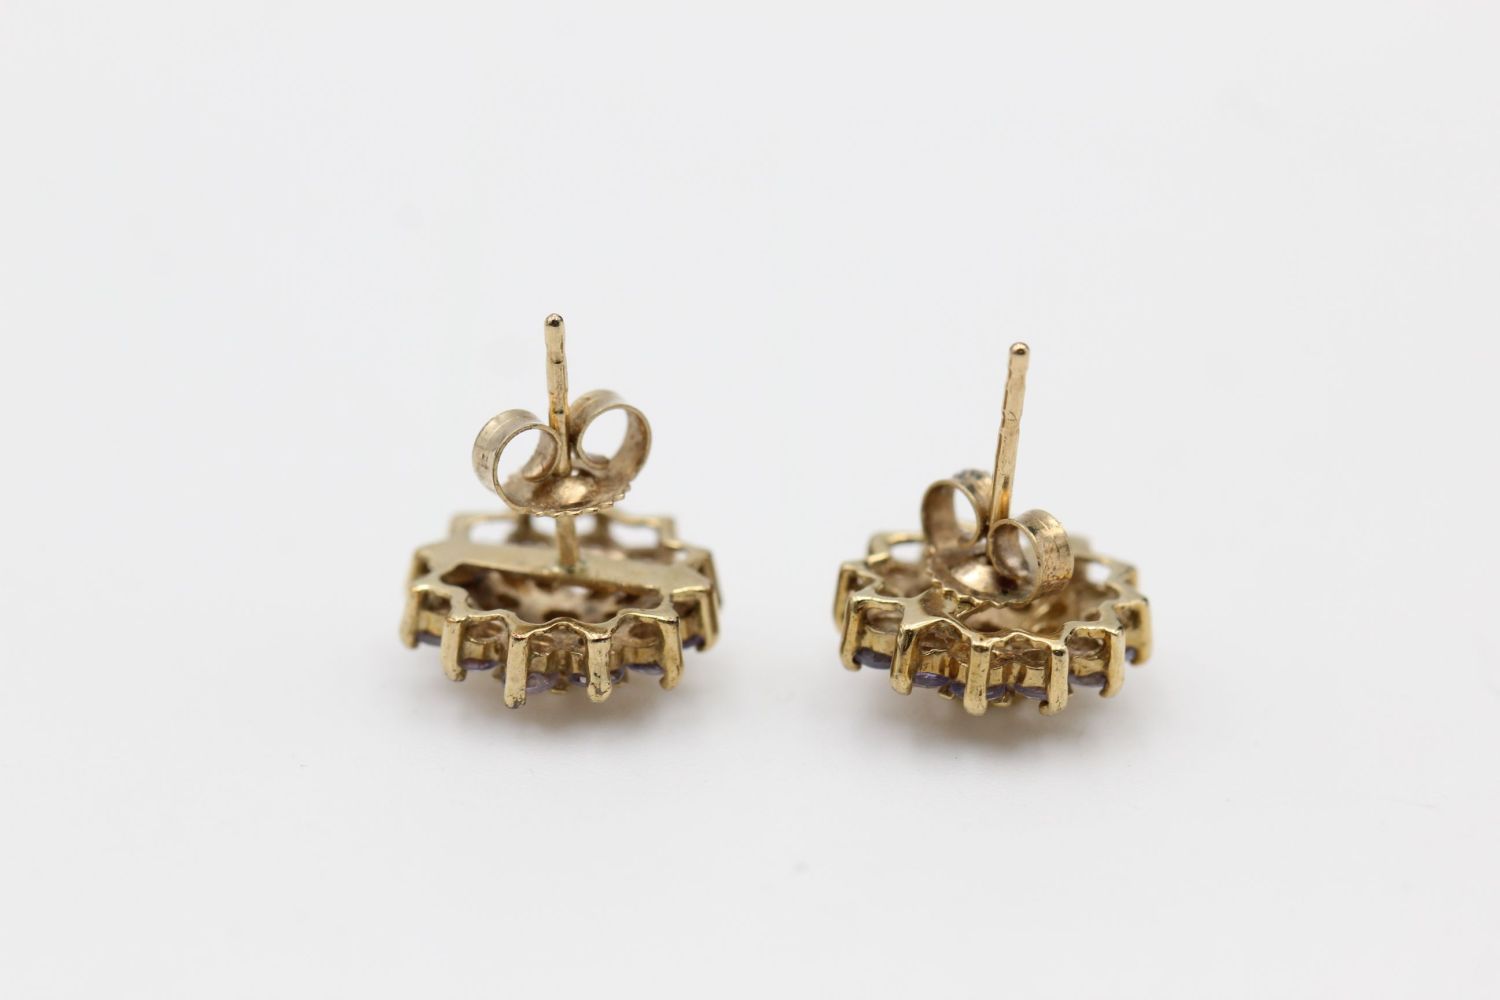 9ct gold diamond & lolite cluster earrings 2.3 grams gross - Image 3 of 4